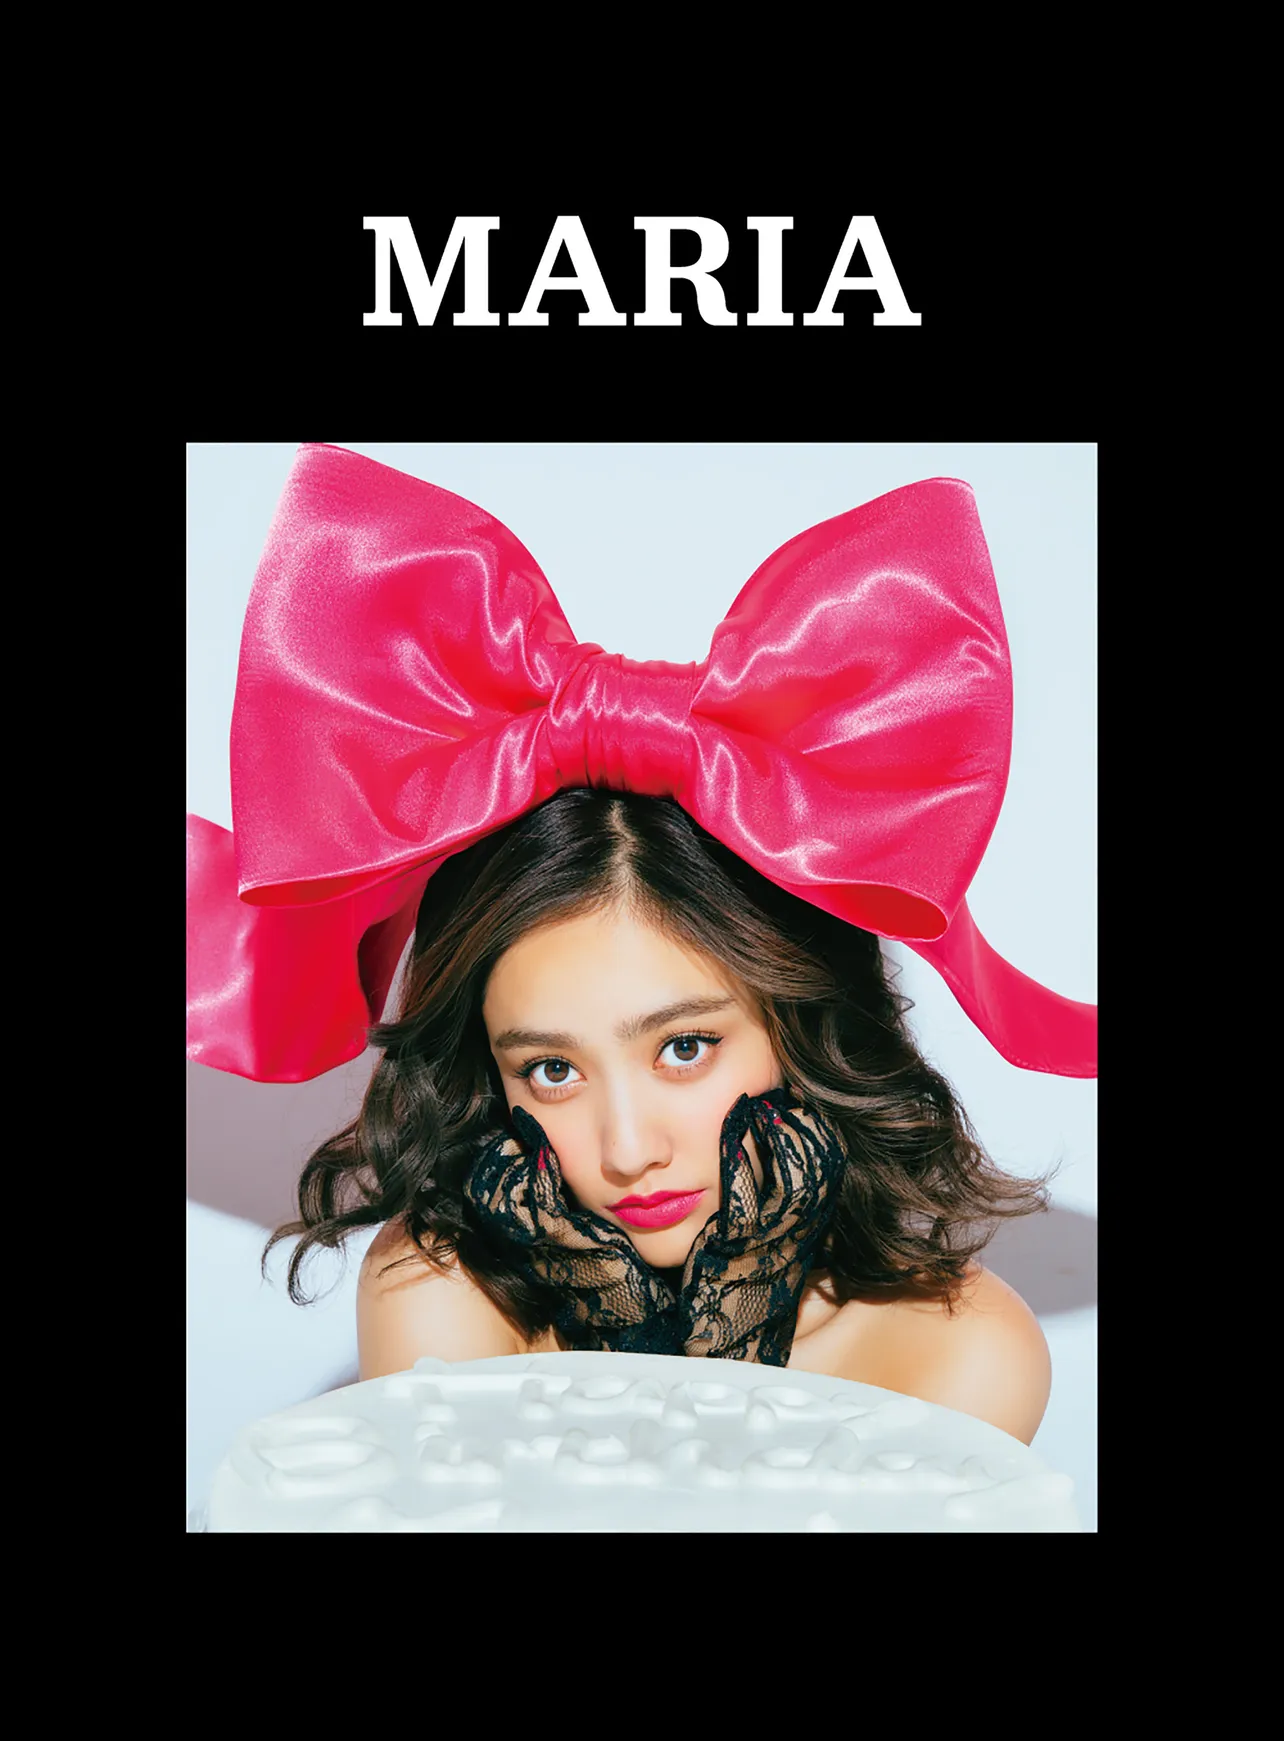 谷まりあ1st写真集「MARIA」は2100円(税別)で発売中